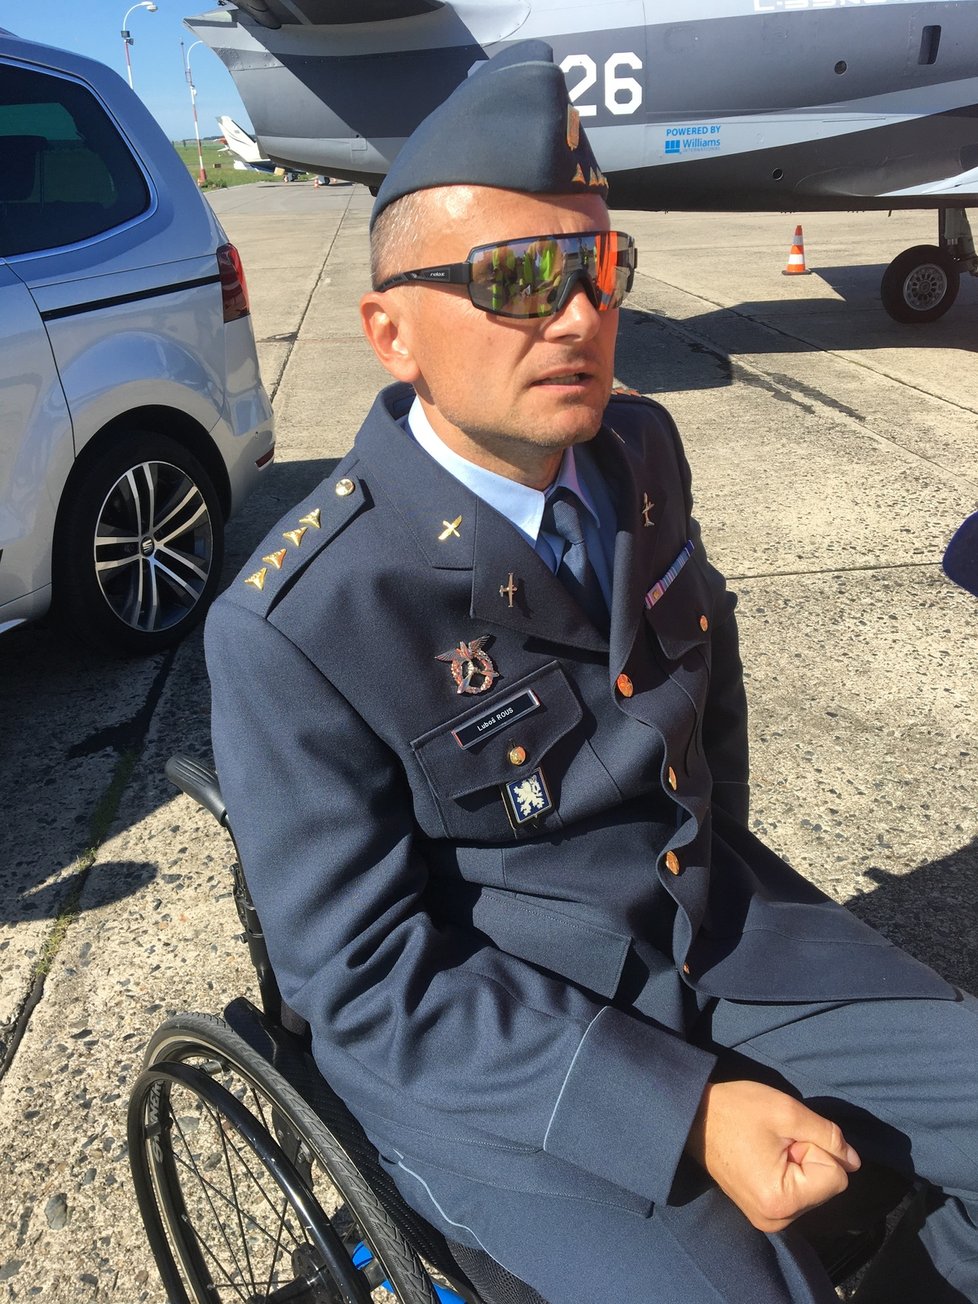 U armády sloužil kapitán Luboš Rous 25 let. Pak skončil na invalidním vozíku kvůli nehodě na motorce.